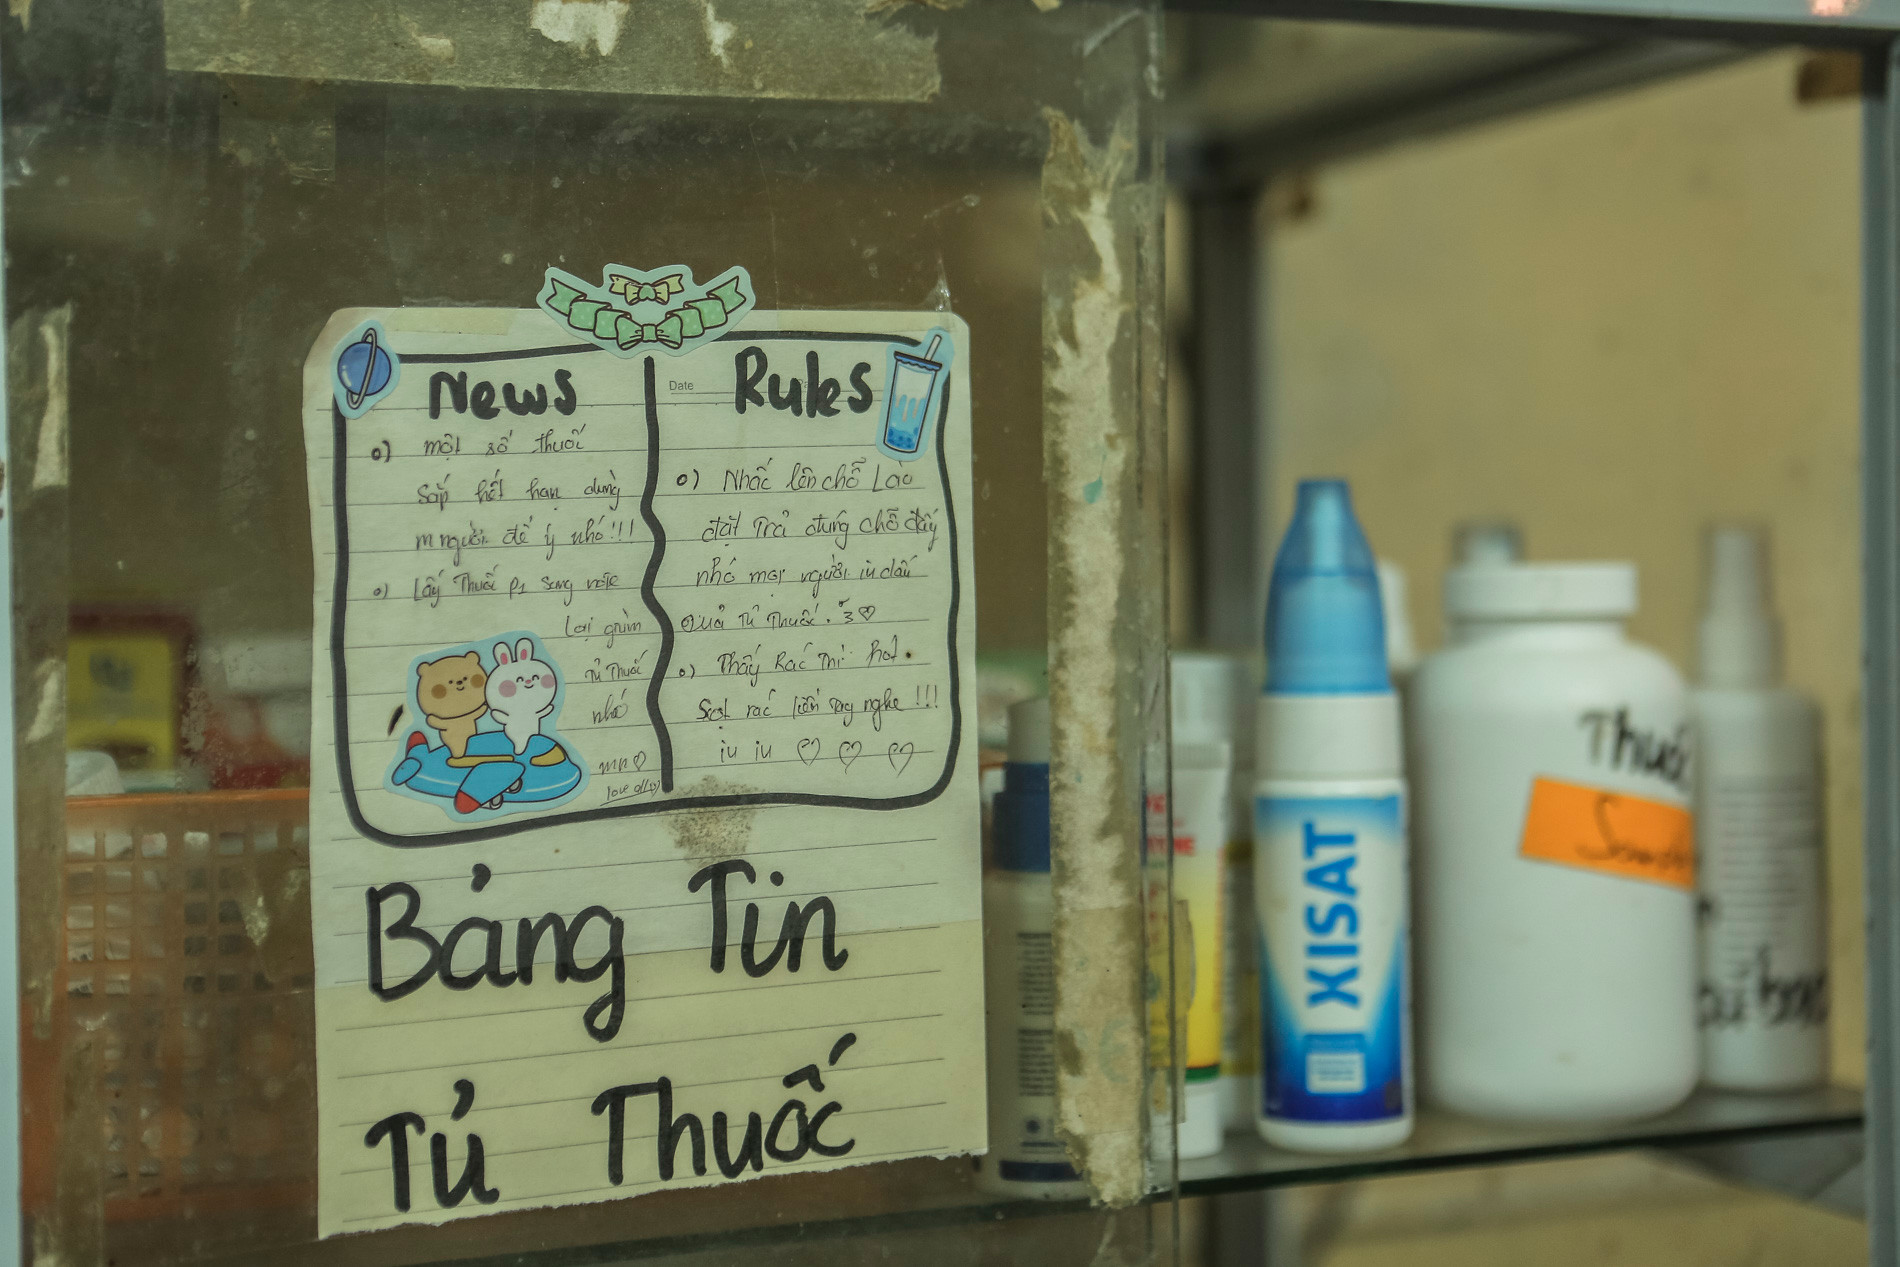 Trạm cứu hộ chó, mèo của các bạn sinh viên ở Hà Nội: “Chúng mình không muốn nhận được cuộc điện thoại nói rằng tại đây đang có động vật bị bỏ rơi” - Ảnh 10.